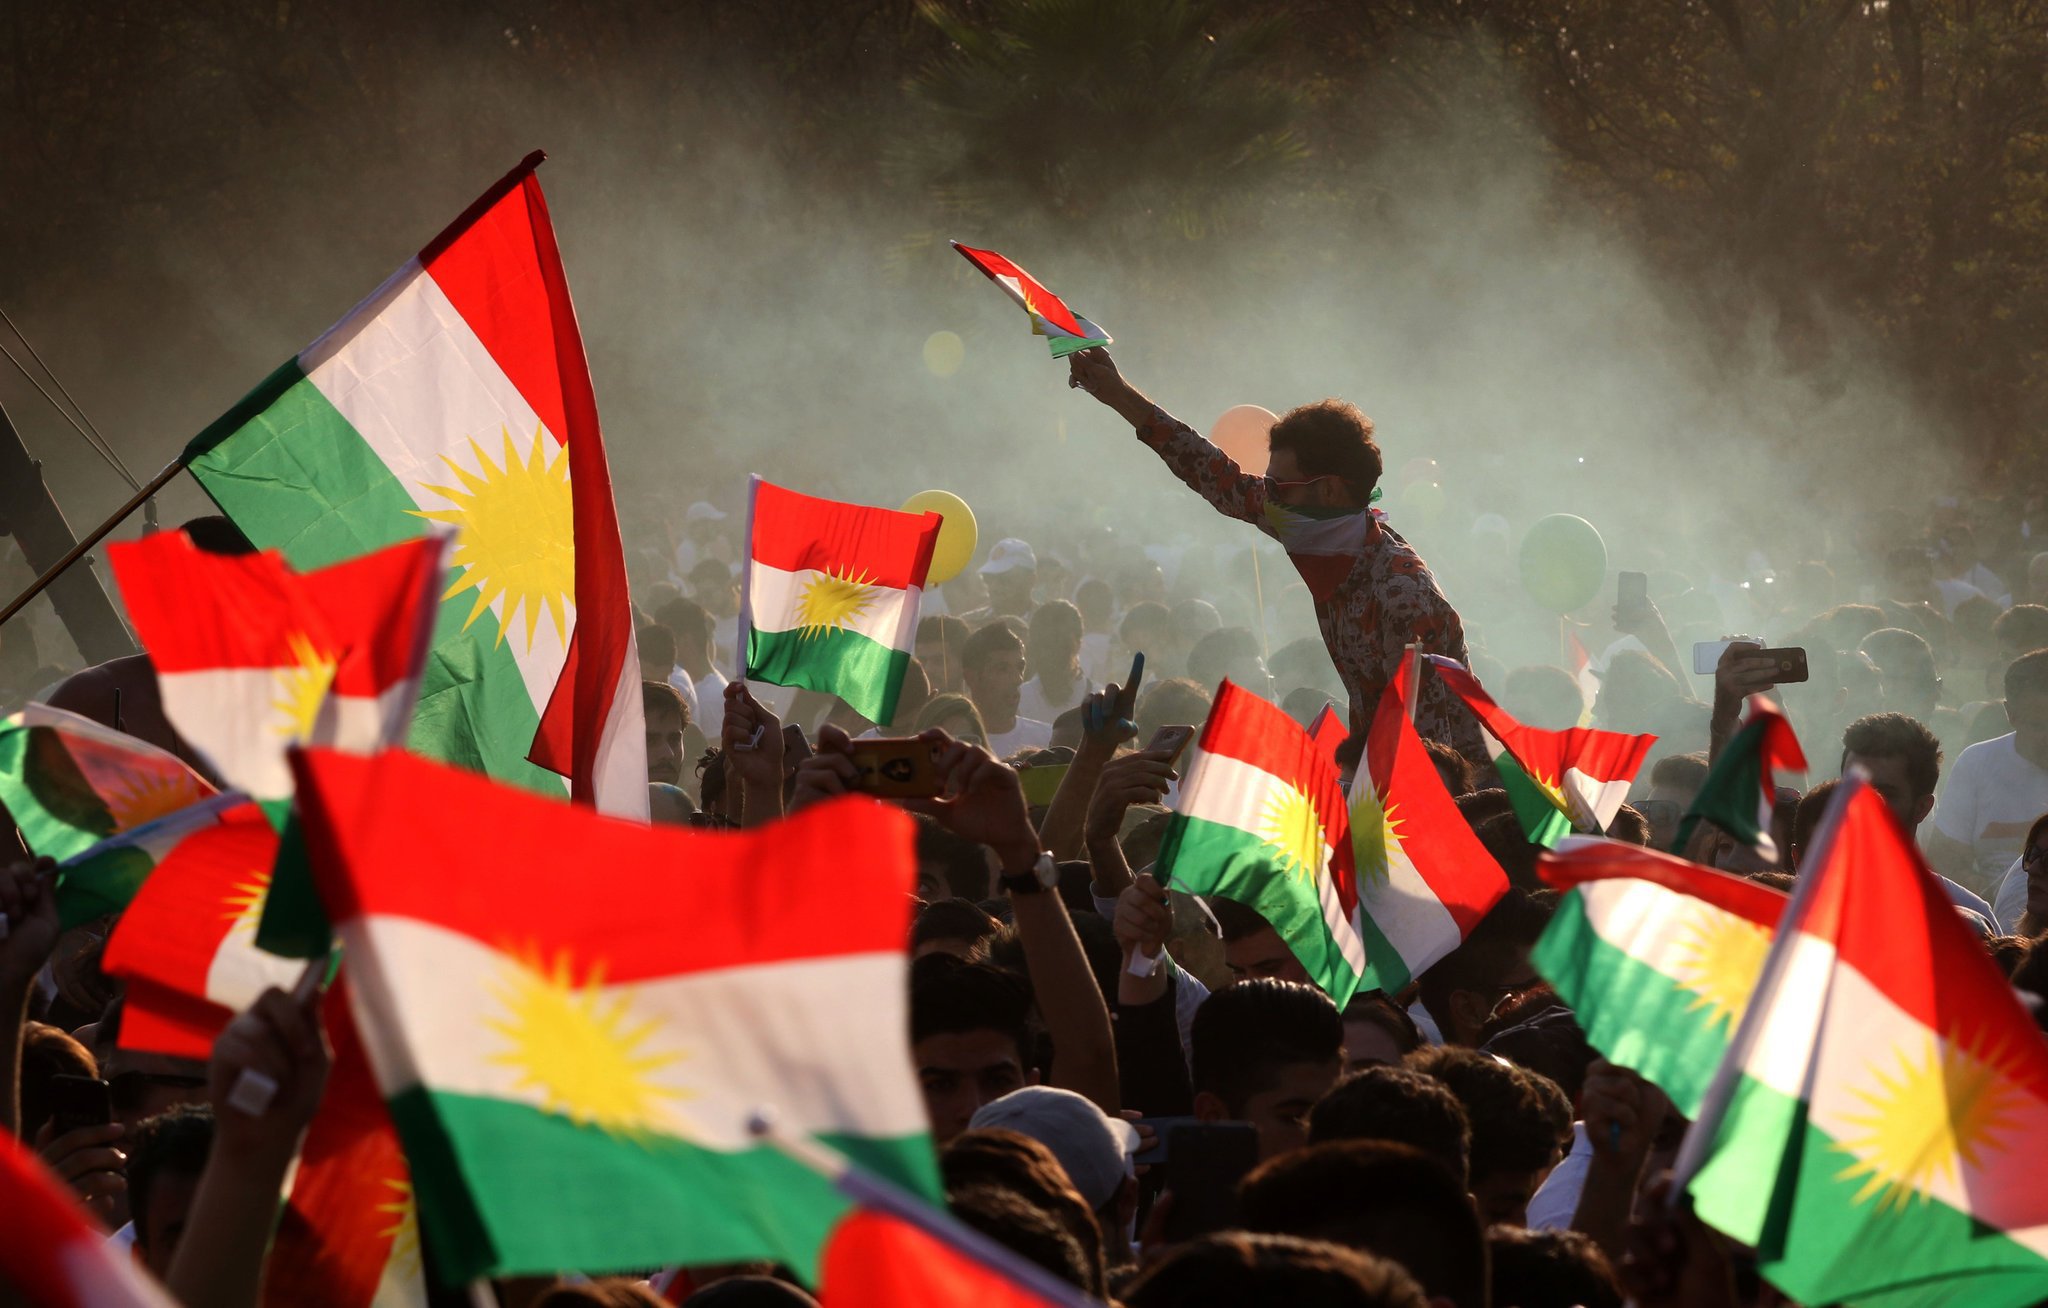 Kürdistan Diasporası Konfederasyonu:'Kürdistan Bölgesi'nin statüsünü korumanın en güçlü silahı birliktir'